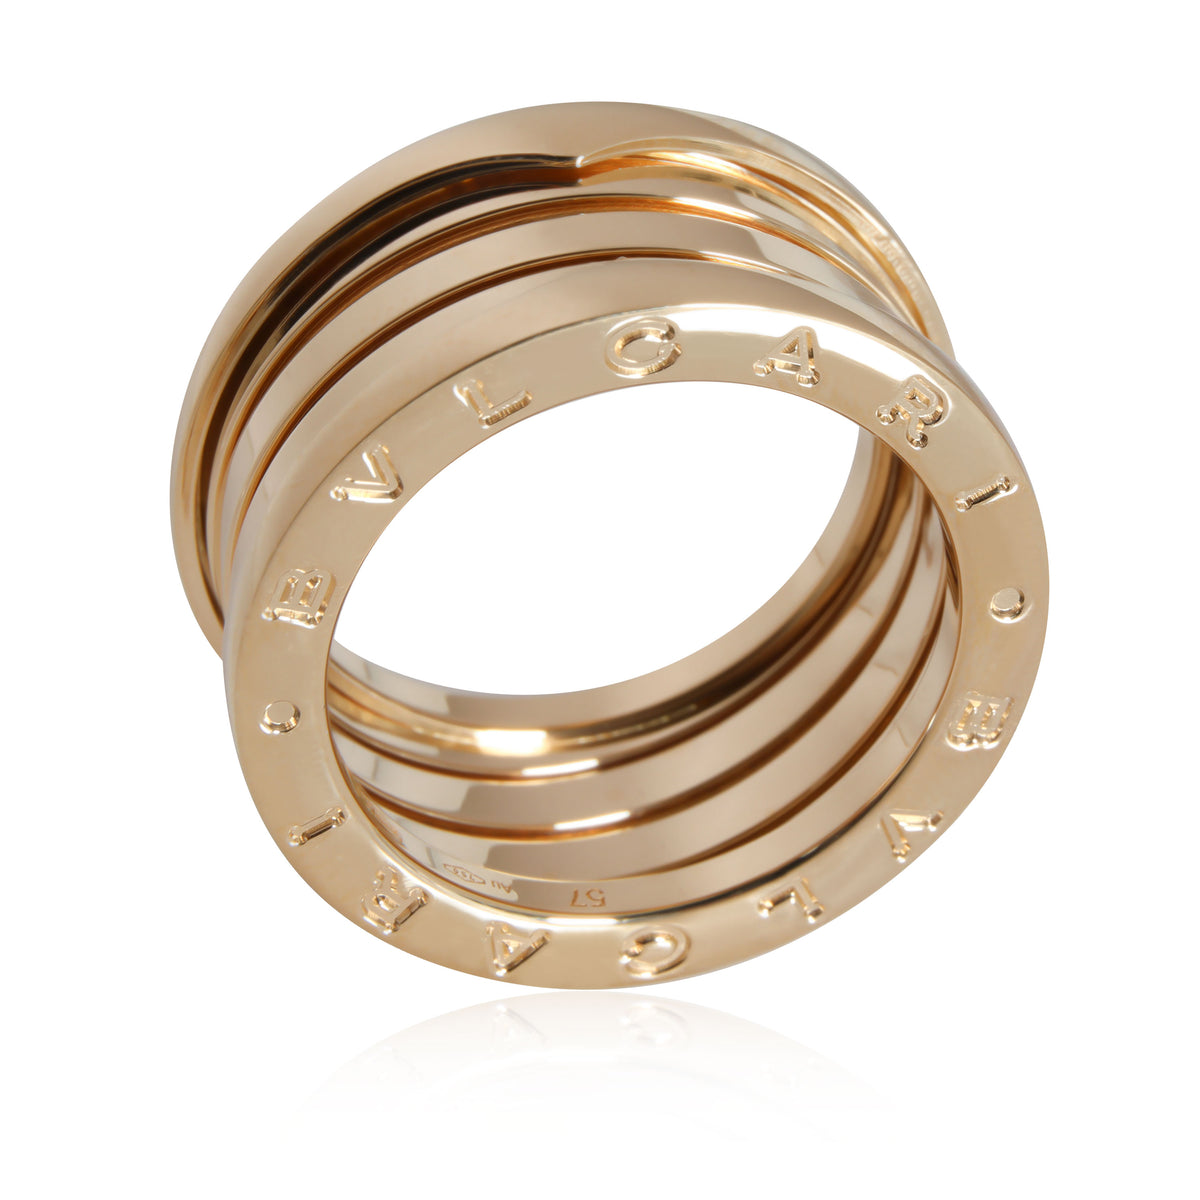 Bulgari B Zero 1 Ring in 18K Yellow Gold